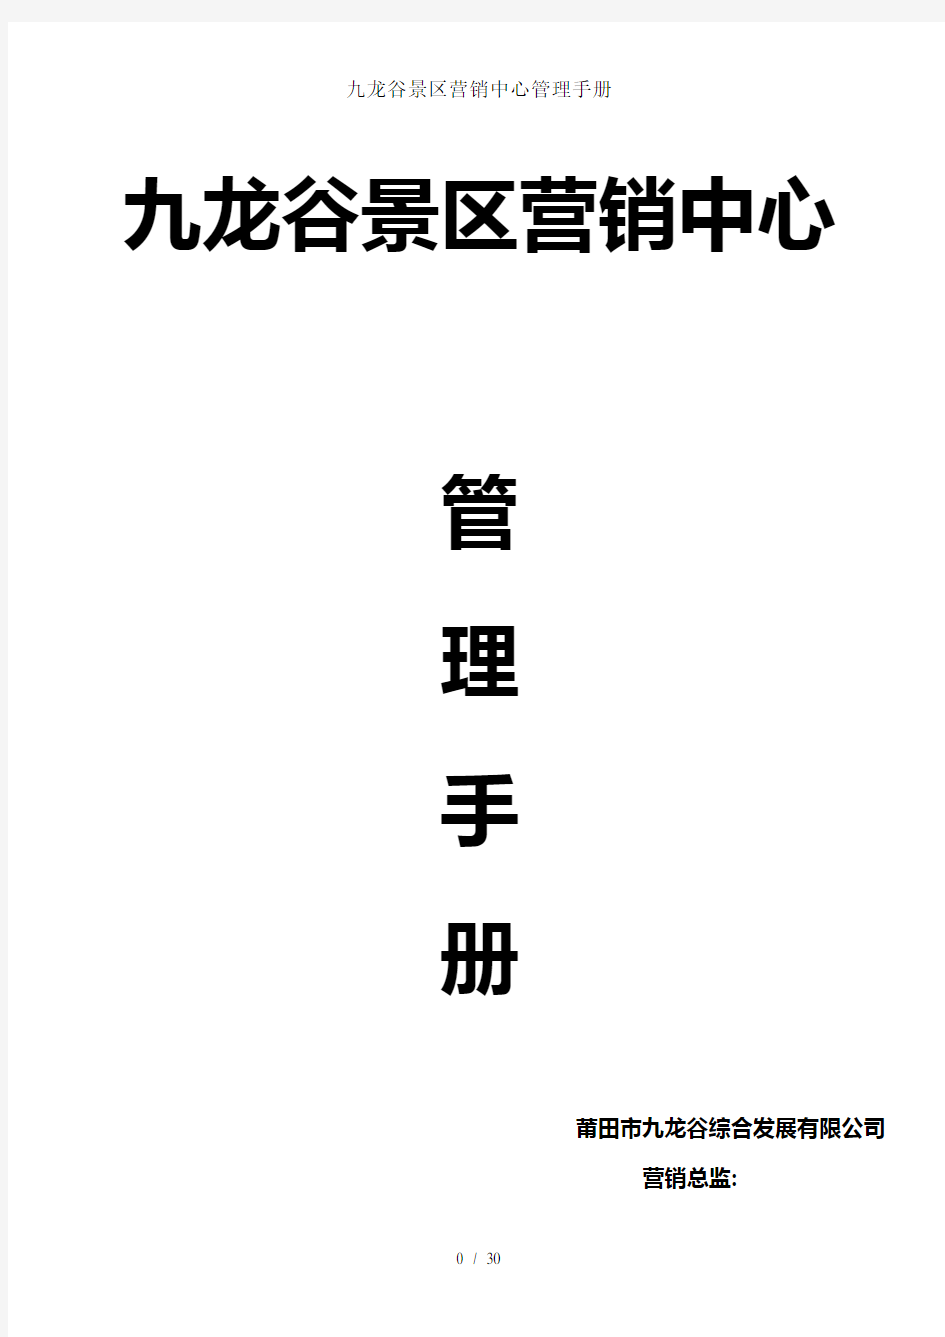 九龙谷景区营销中心管理手册